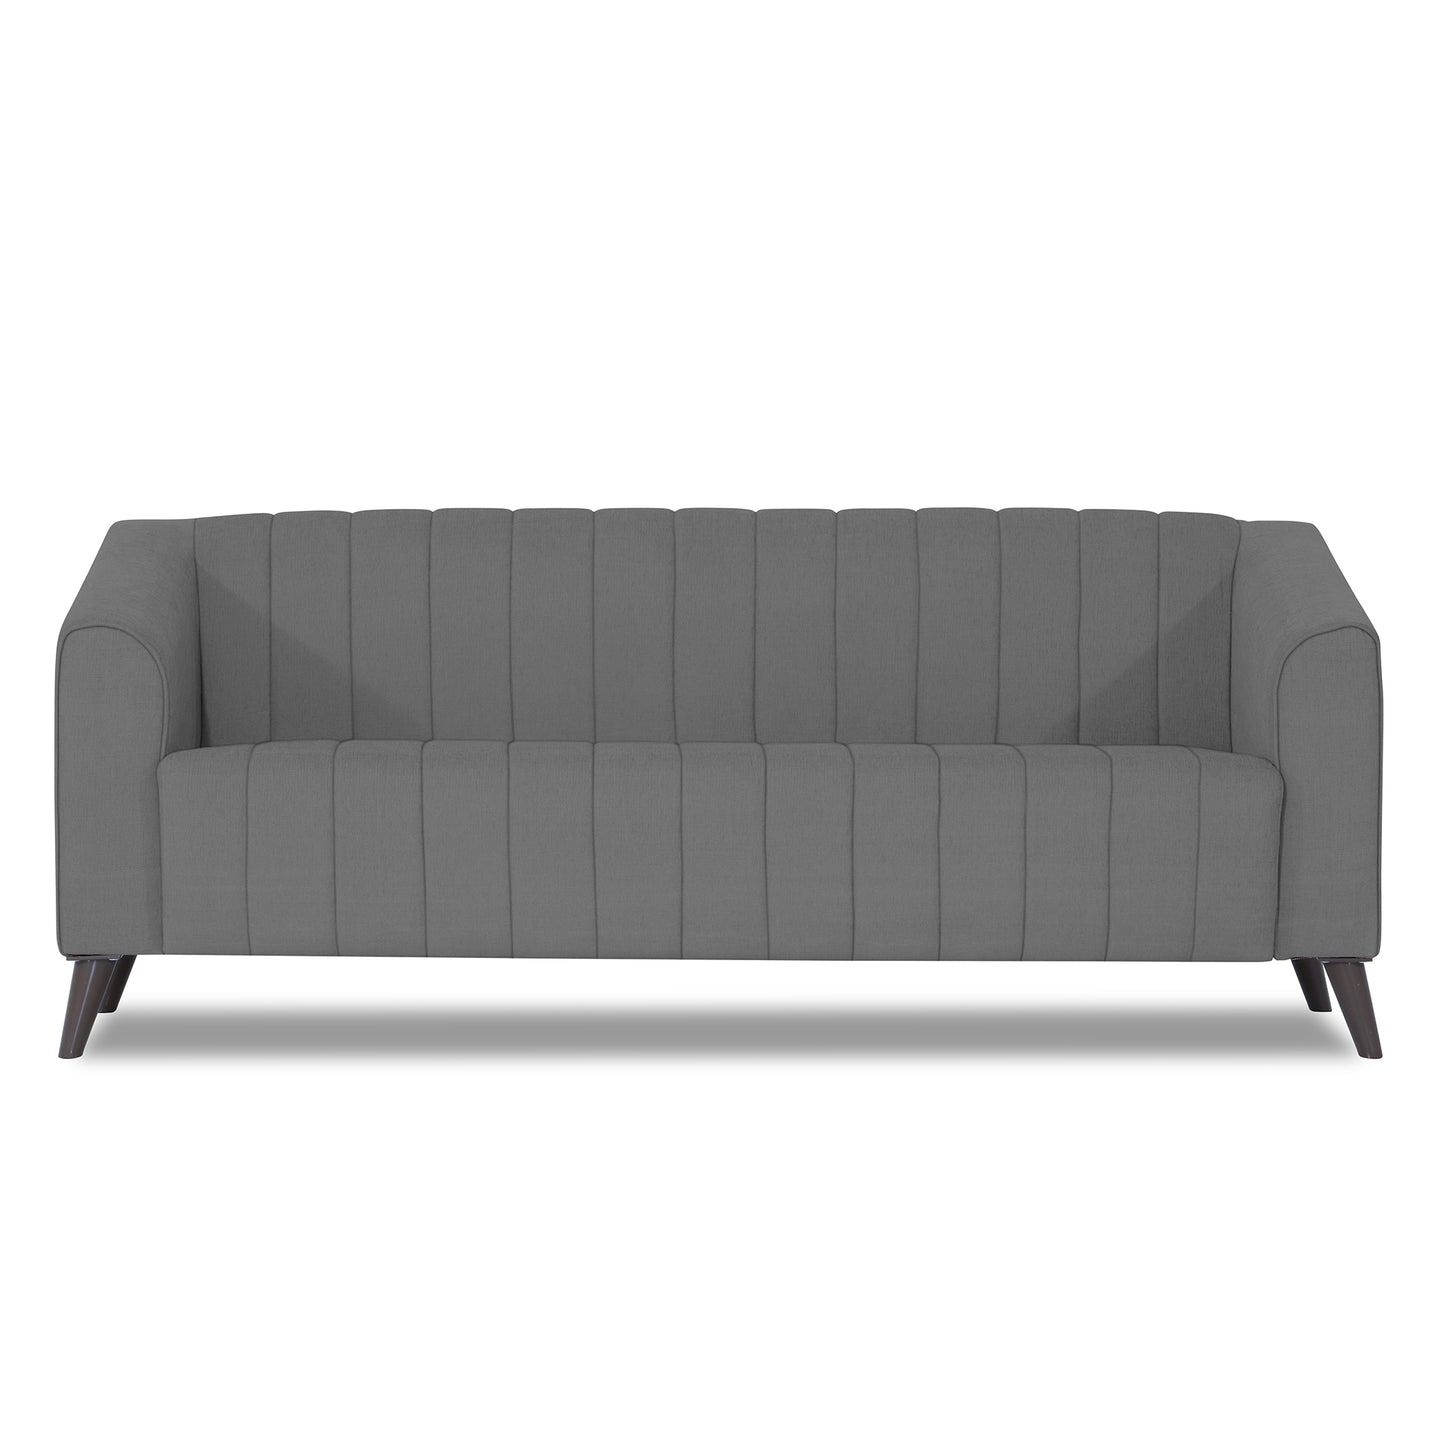 Adorn India Premium Laurel 3 Seater Sofa (Grey)